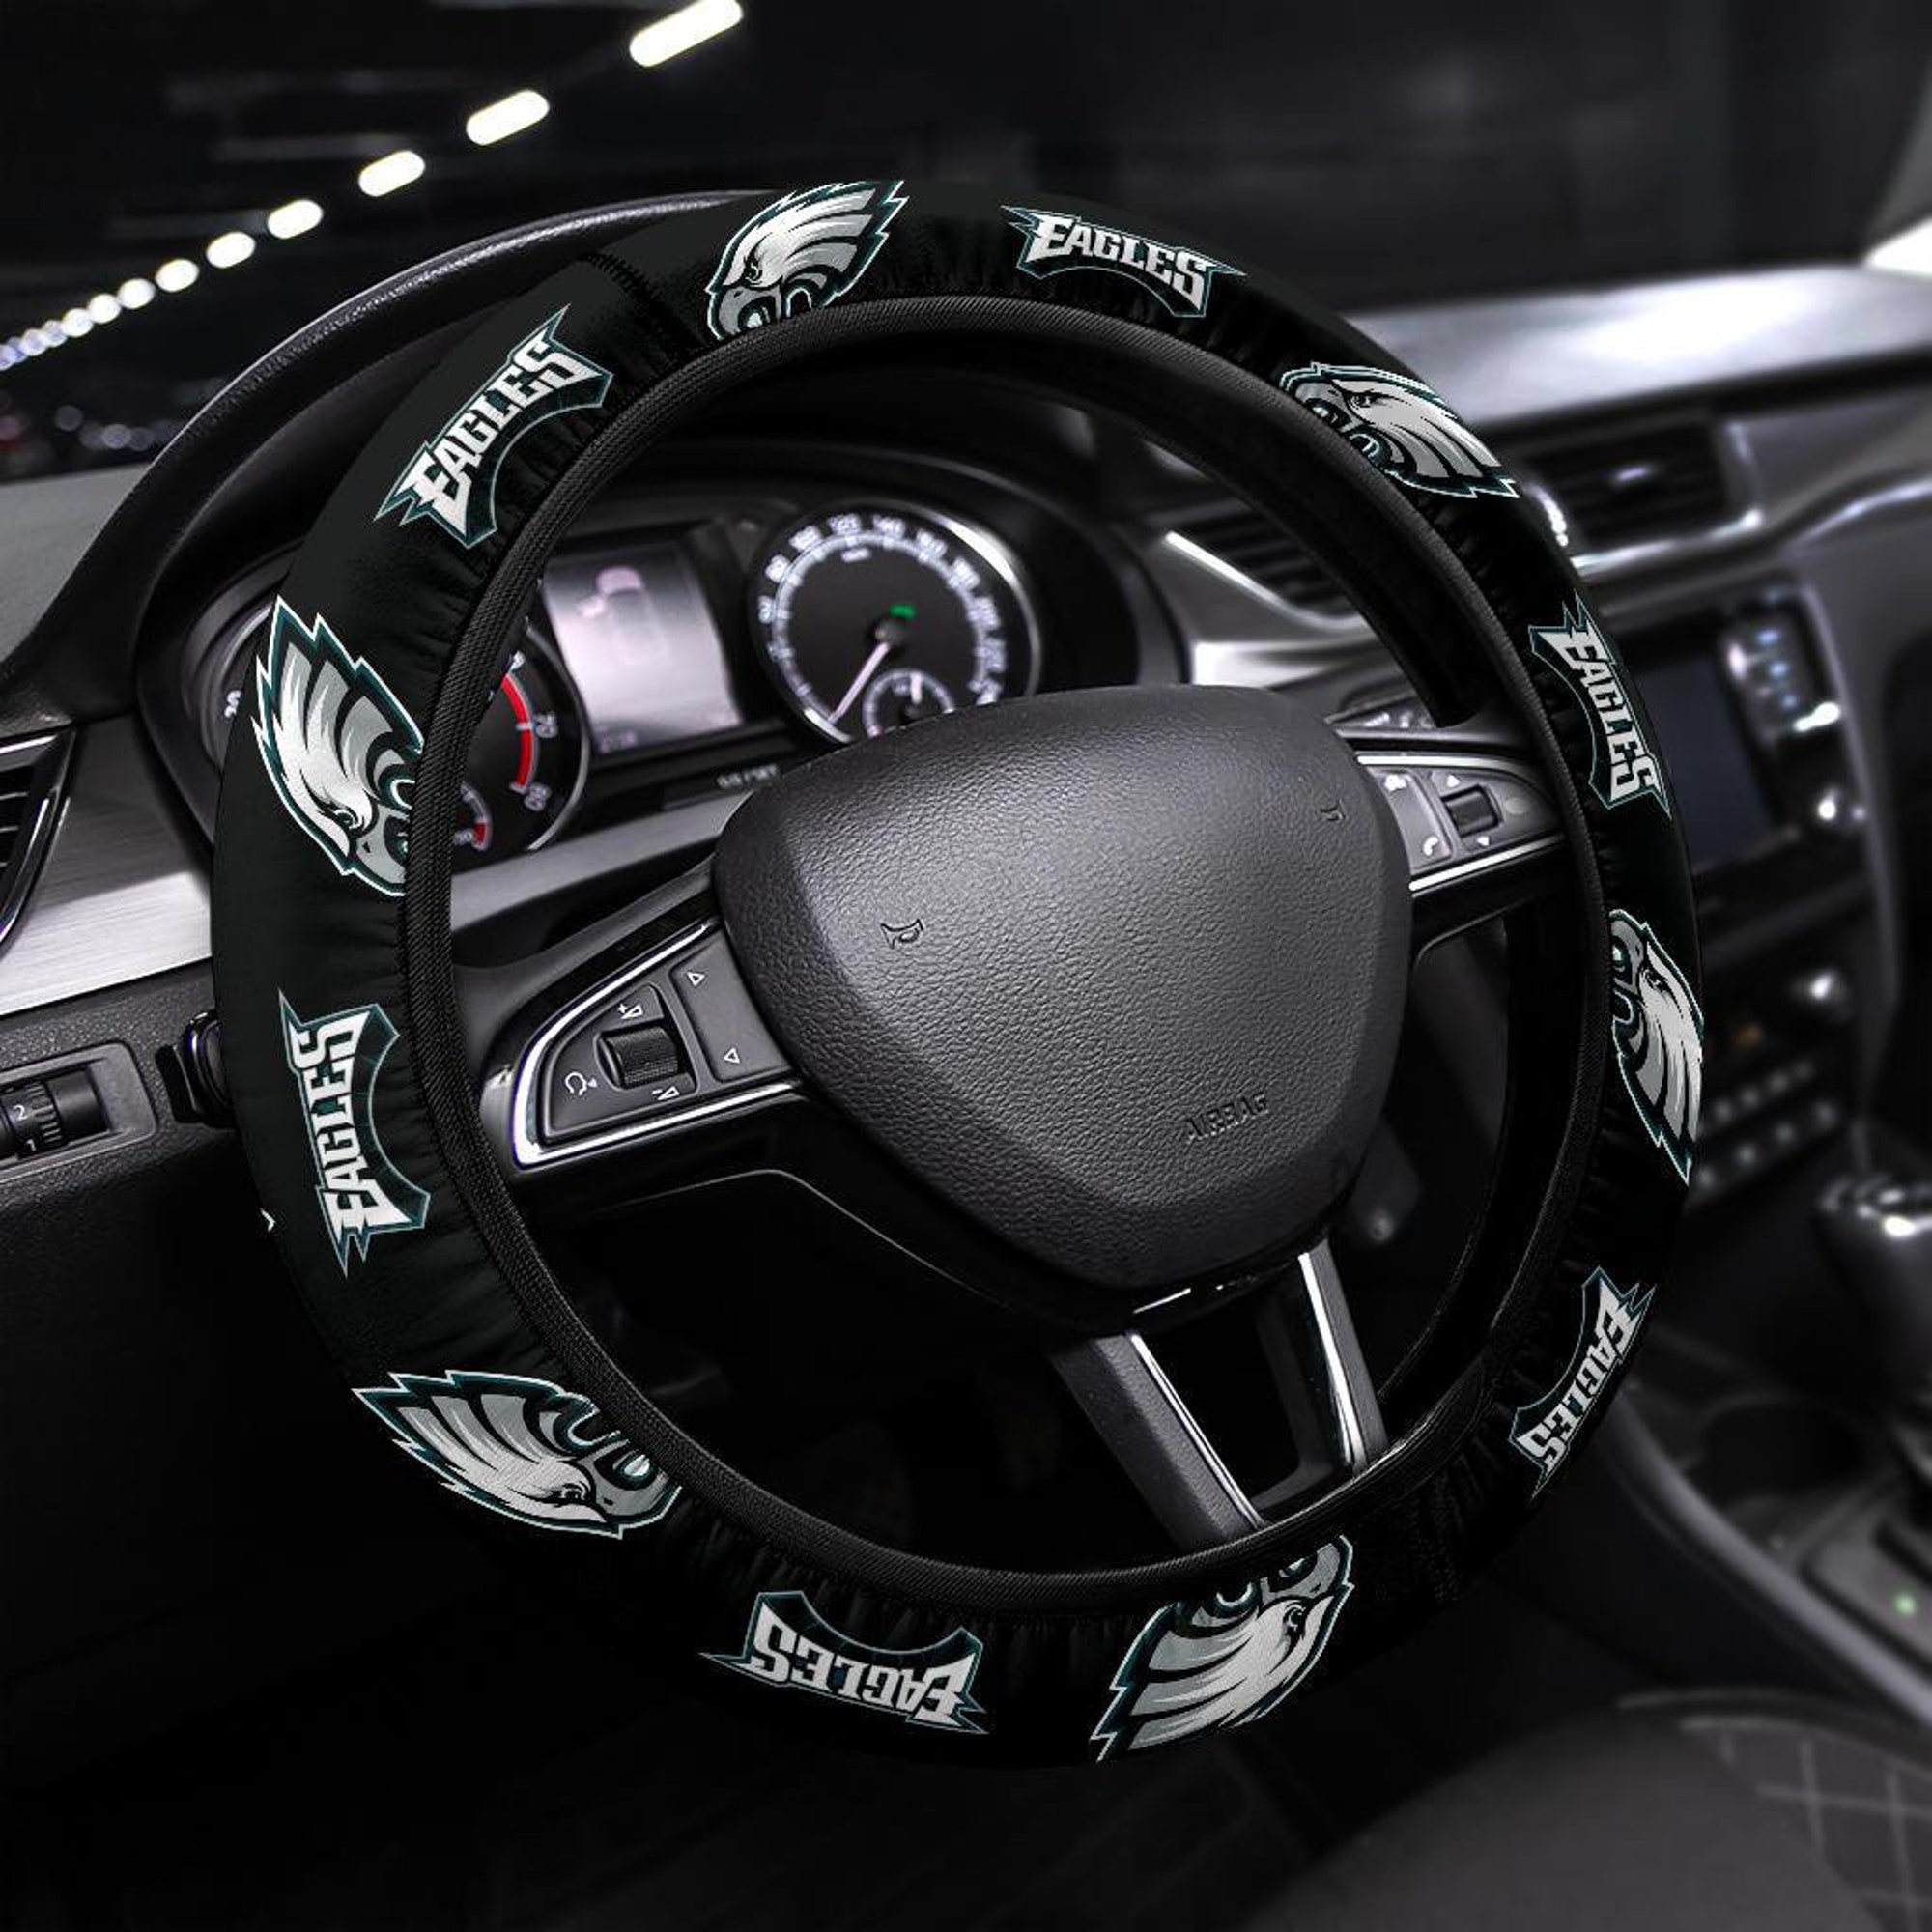 Philadelphia Eagles themed custom steering wheel cover